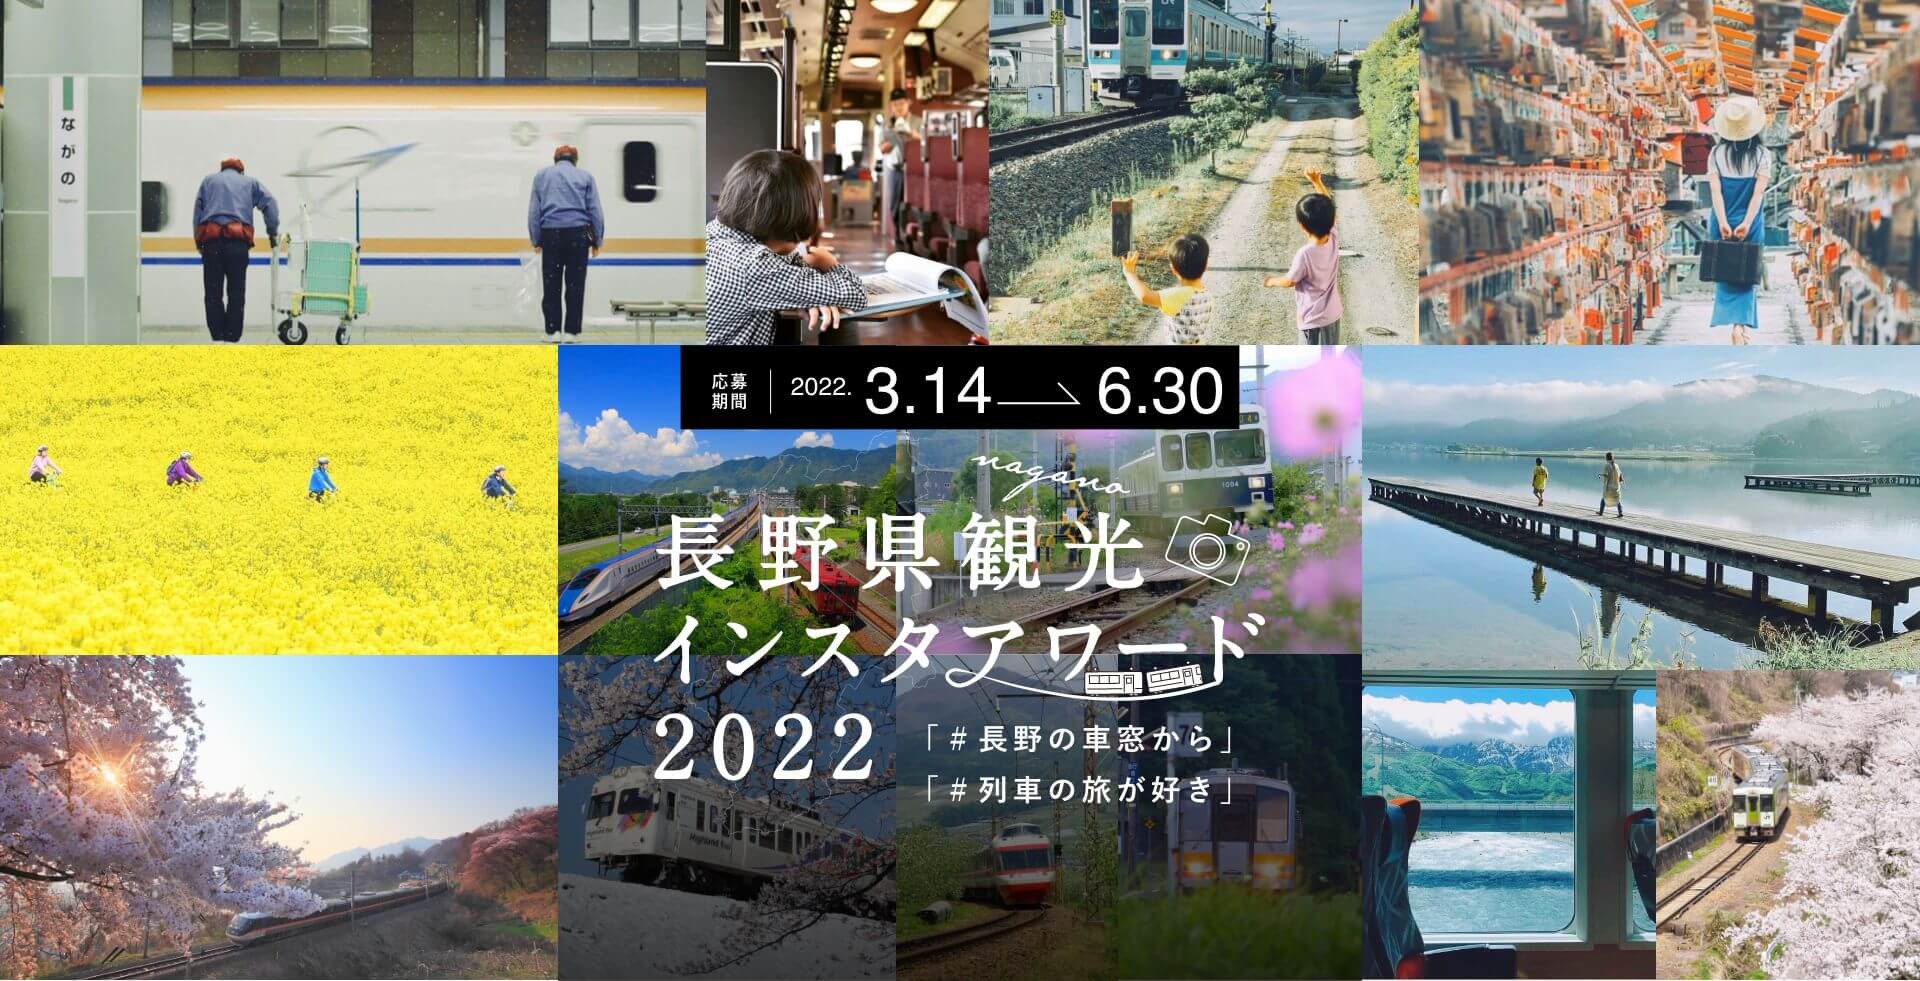 3月14日スタート 長野県観光インスタアワード22 を開催 一般社団法人 長野県観光機構のプレスリリース